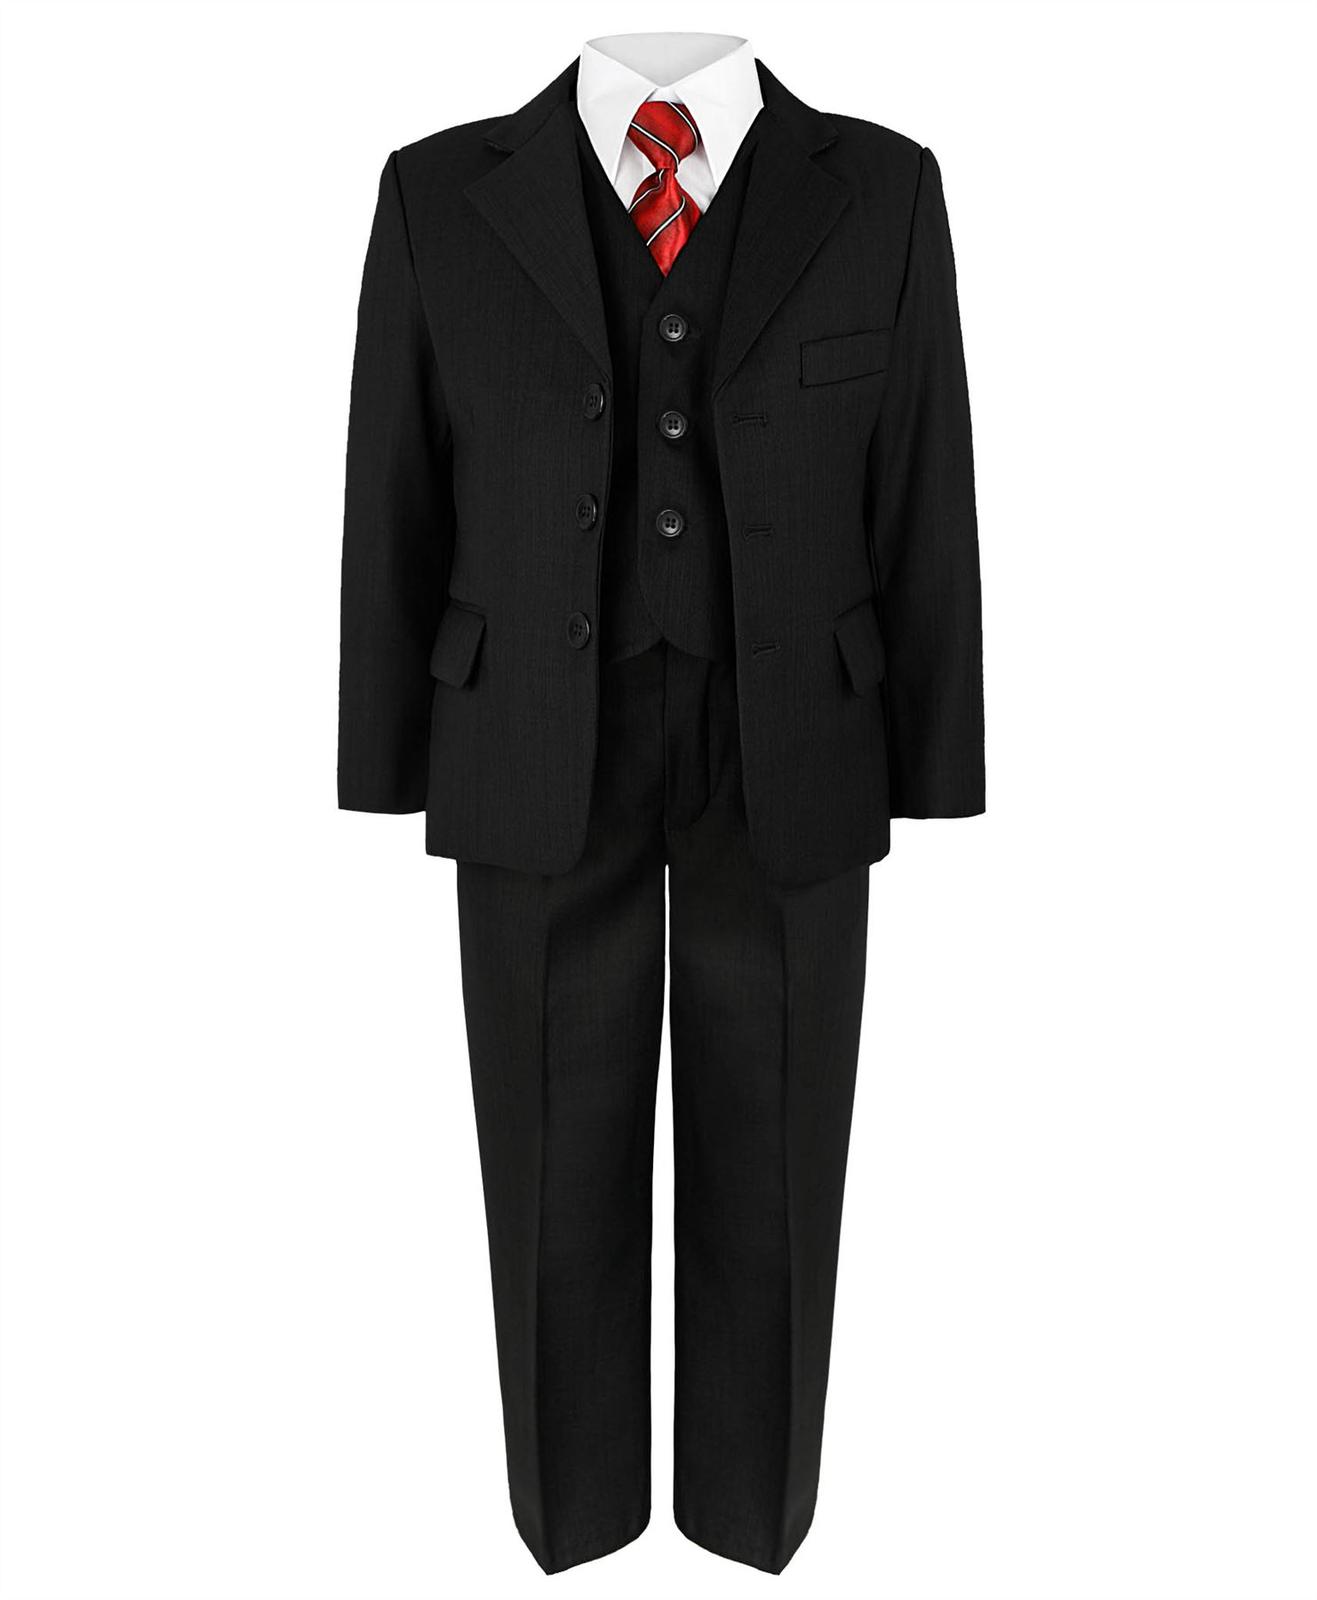 Černý společenský oblek - půjčovné, 5-6 let - Obrázek č. 1